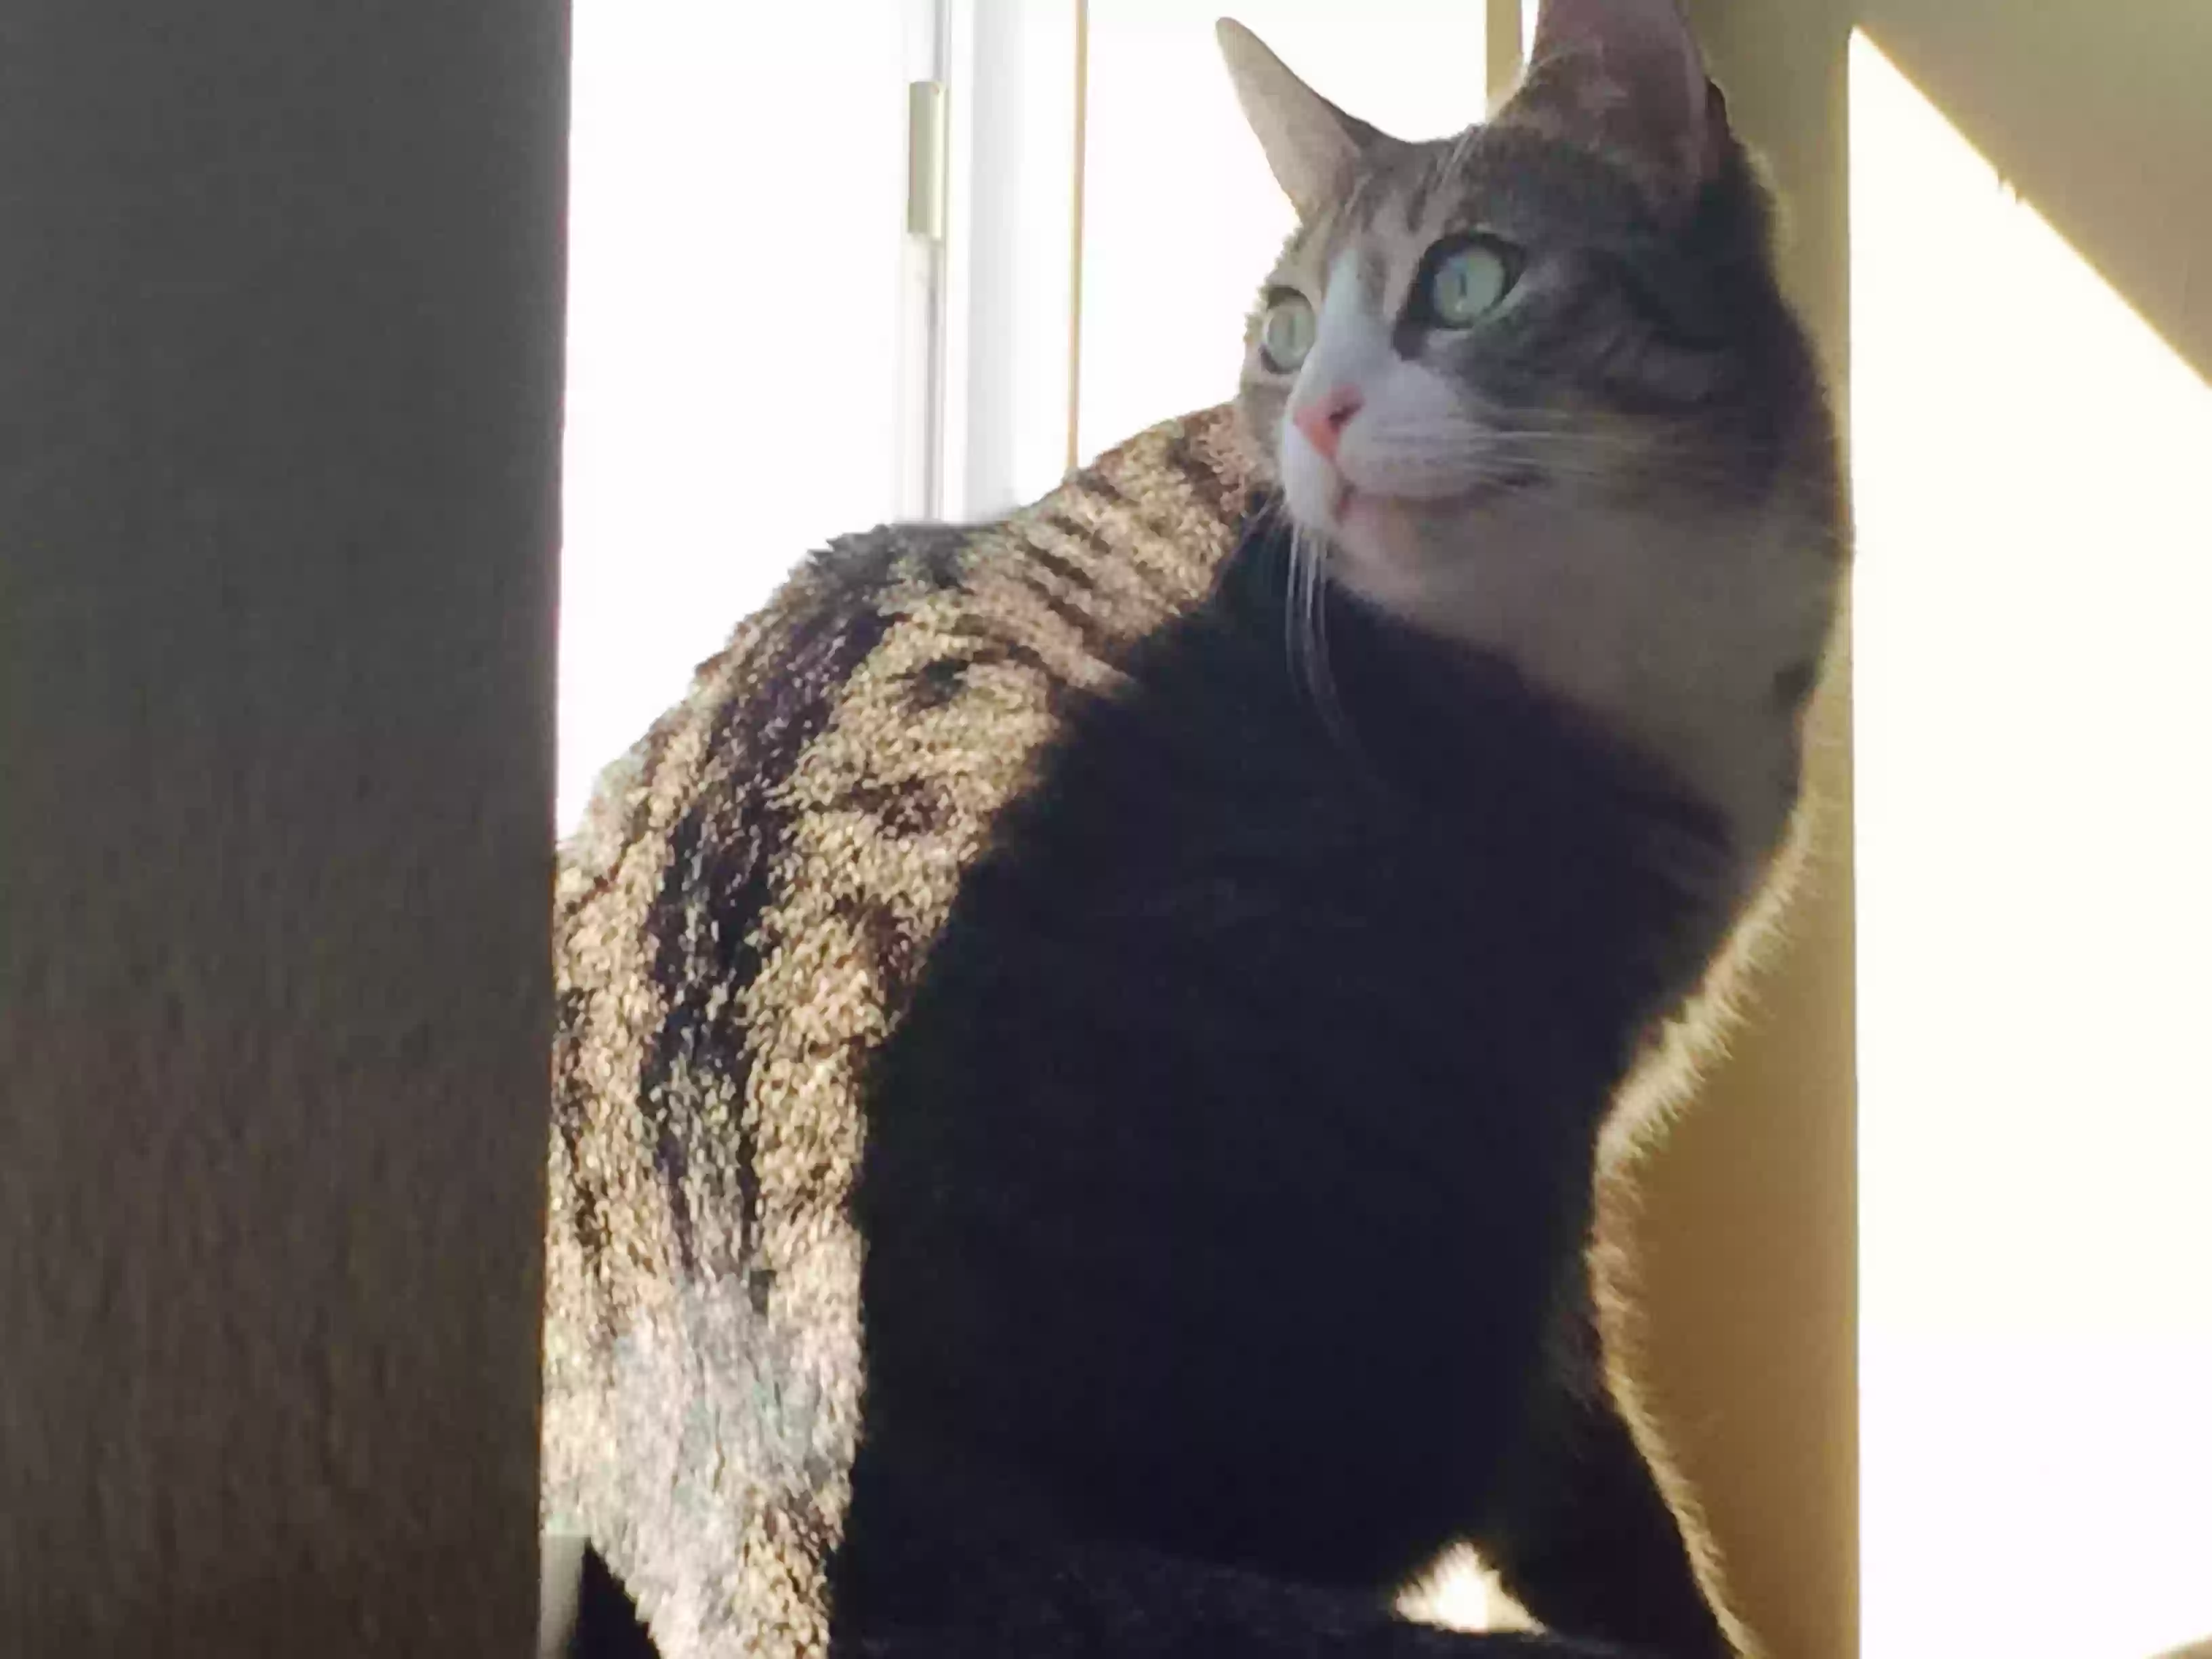 adoptable Cat in Saint Cloud,FL named June